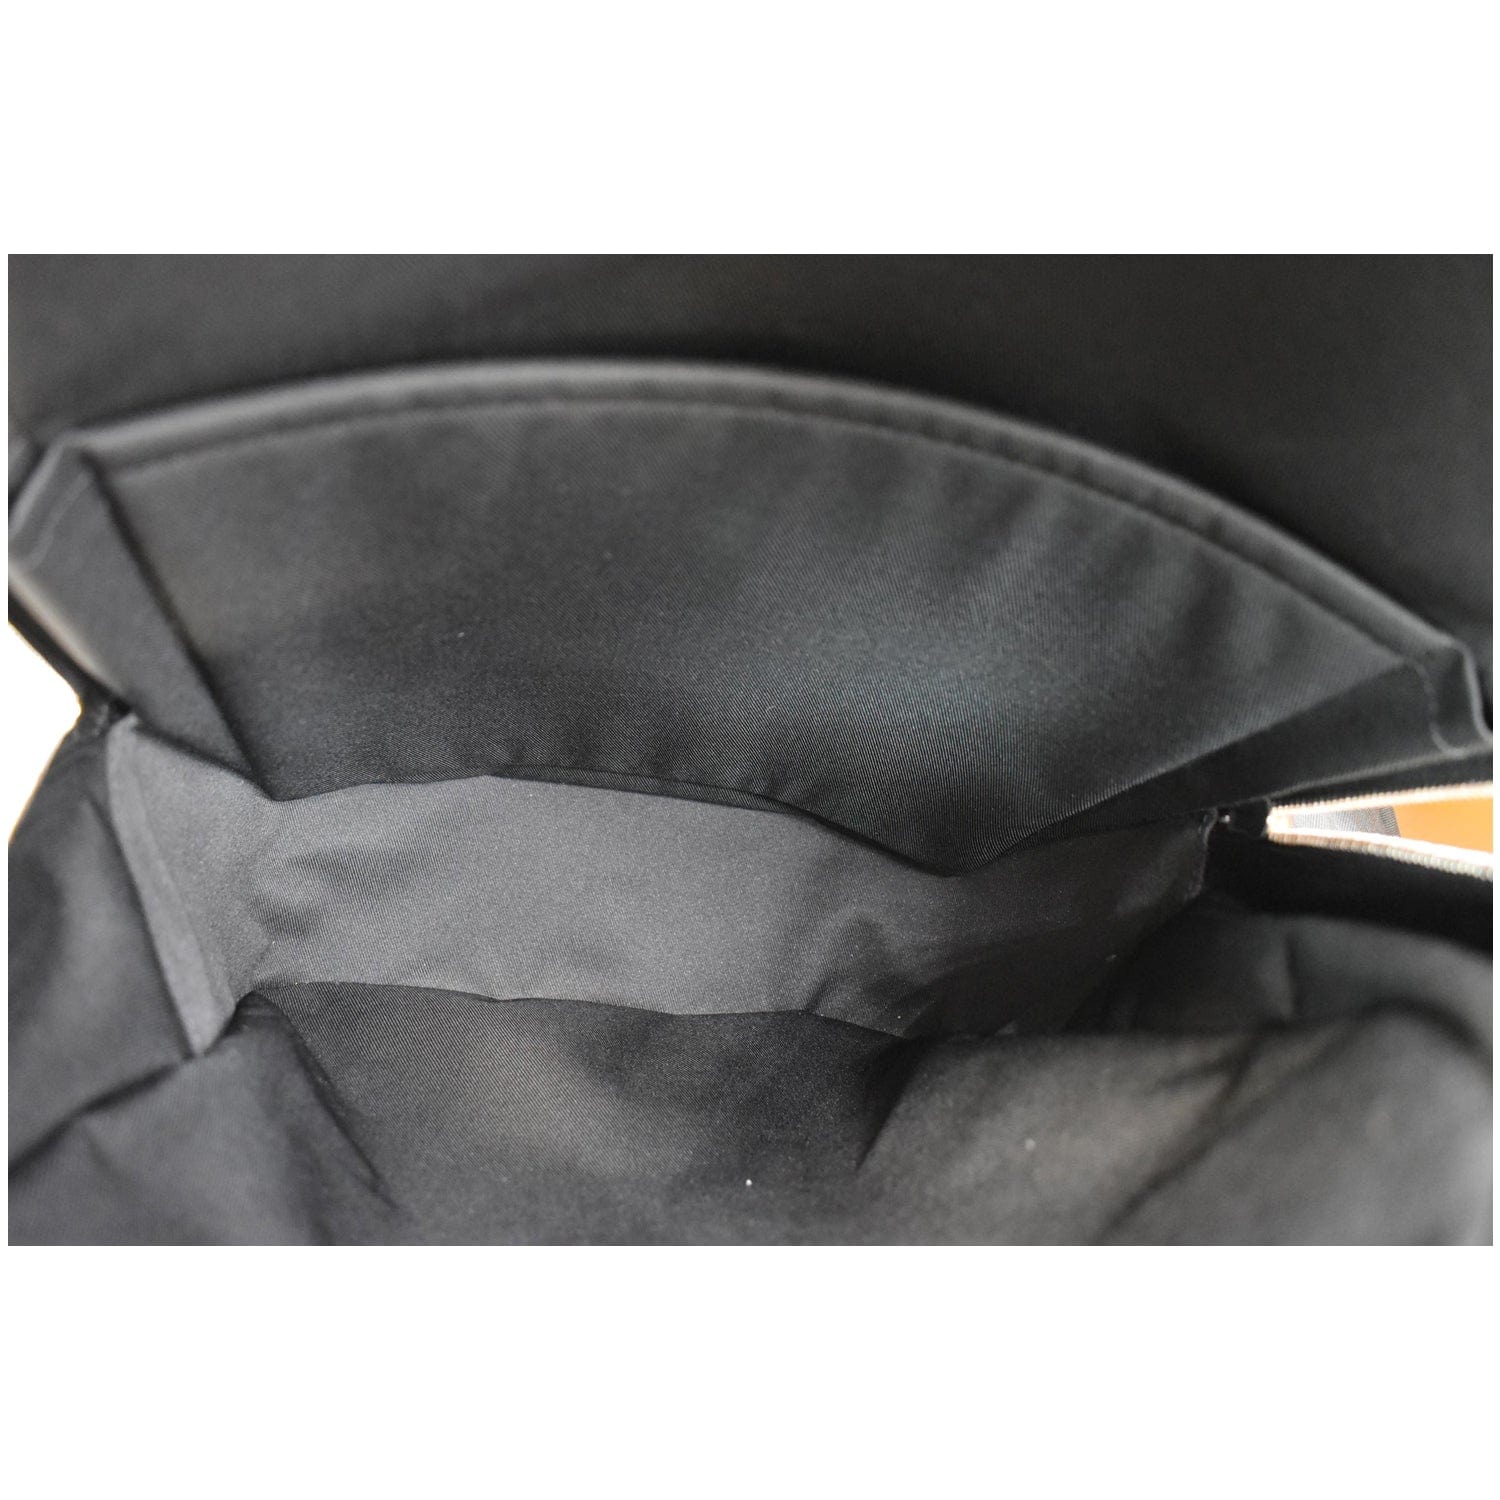 Louis Vuitton Michael Damier Graphite Canvas Backpack on SALE